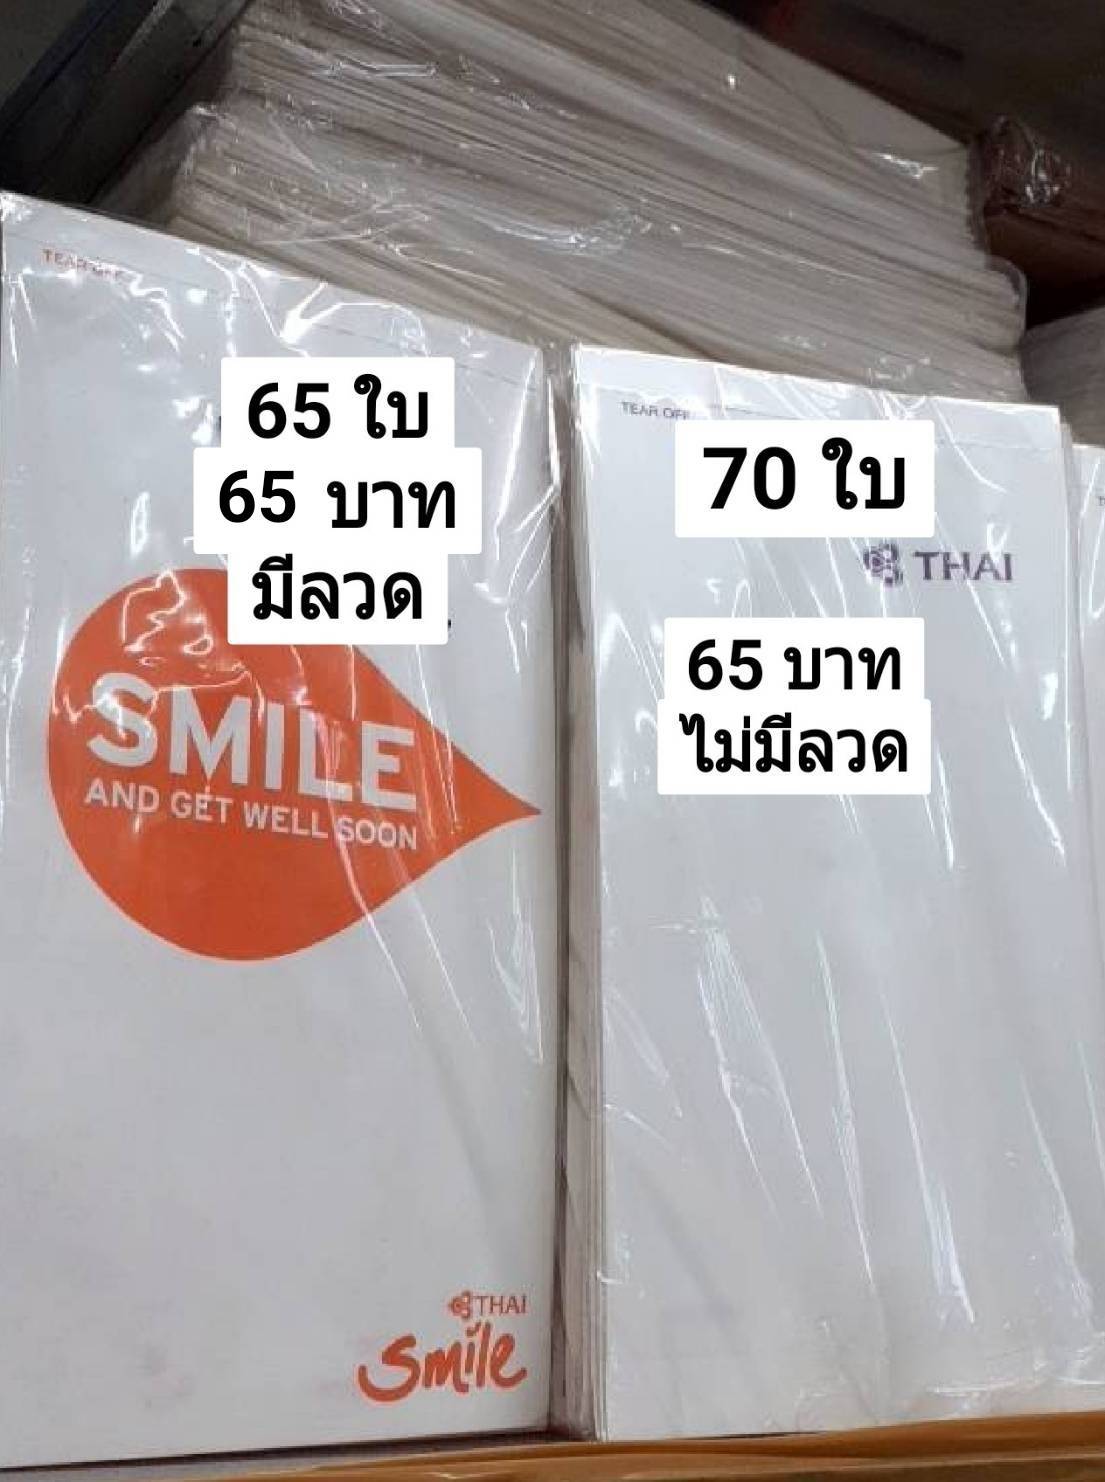 ถุงกระดาษใส่เครื่องสำอางค์,น้ำหอม ไว้ขาย ตรา การบินไทย ,Smile มีลวดและไม่มีลวดตามภาพโปรดระบุ